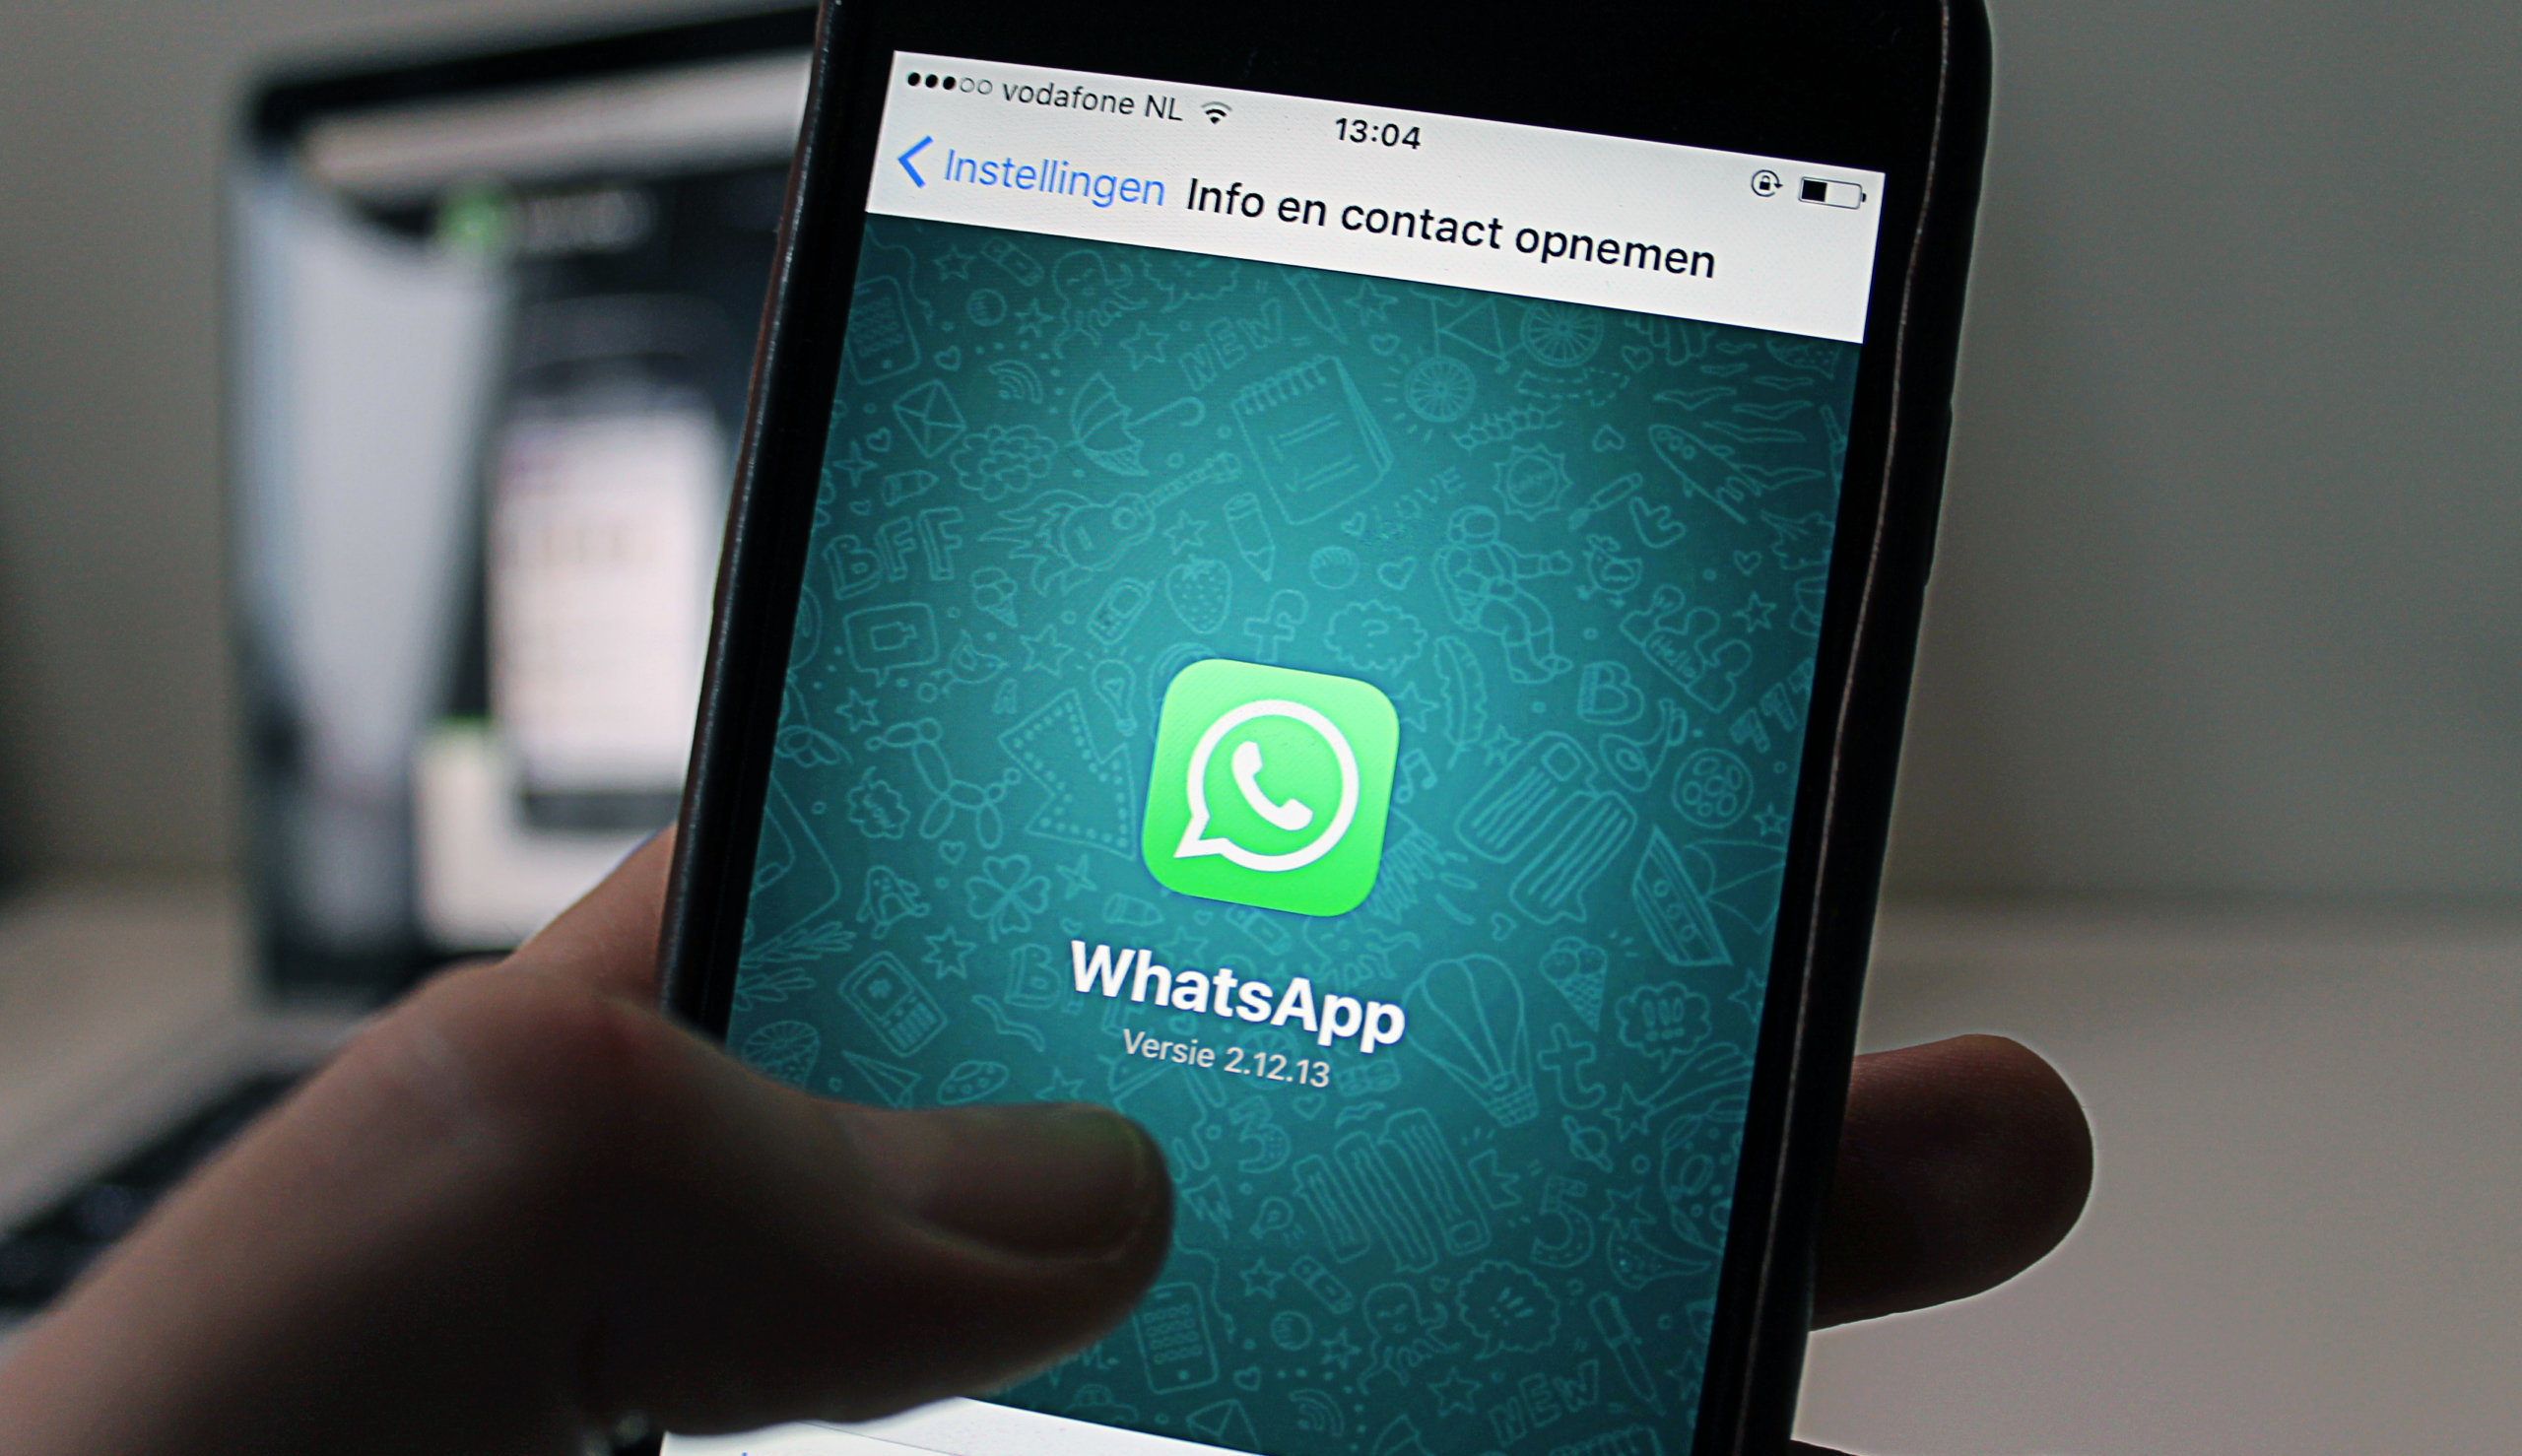 WhatsApp i Instagram zmieniają nazwę